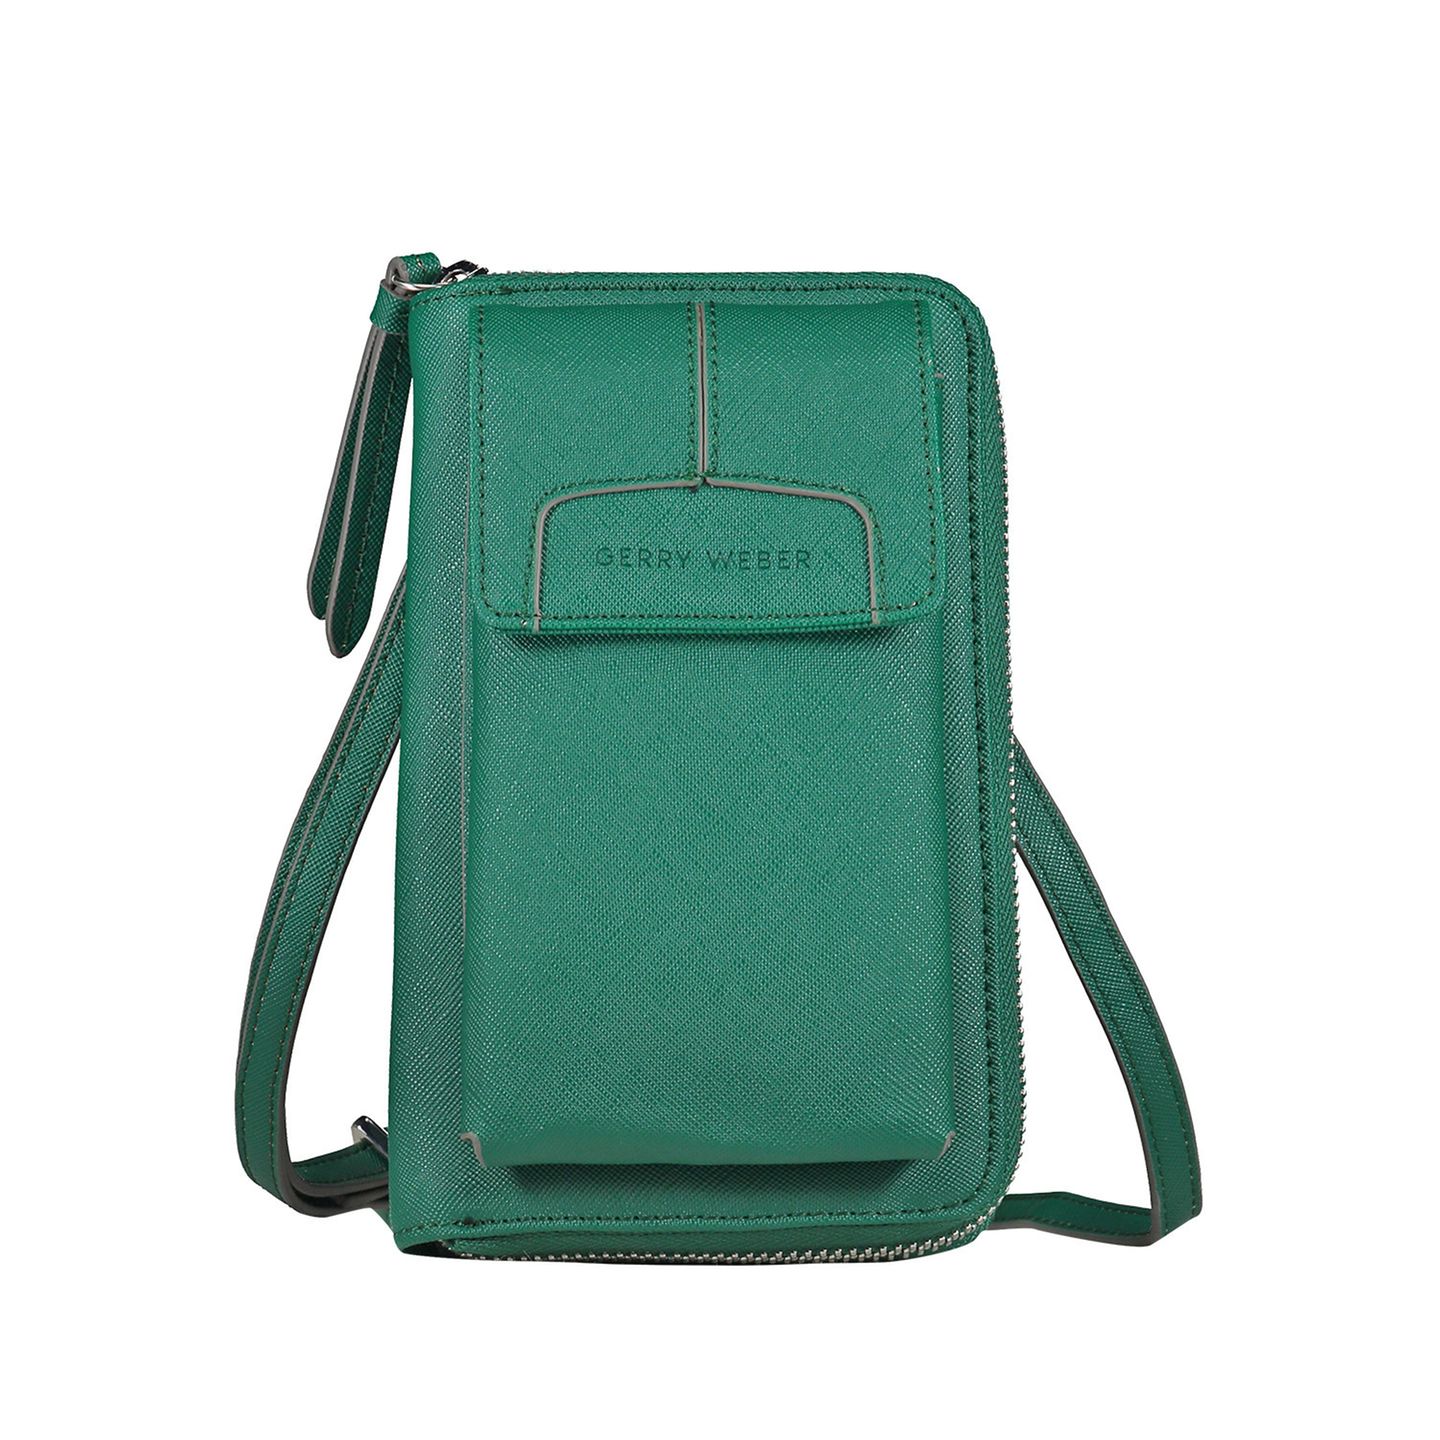 Deine Mama liebt Mode? Dann ist ein Faschion-Statement das perfekte Geschenk für sie. Die grüne Handtasche ist praktisch für Reisen oder unterwegs – und in Kombination mit schlichten Basics einfach unschlagbar. Von Gerry Weber, etwa 50 Euro.